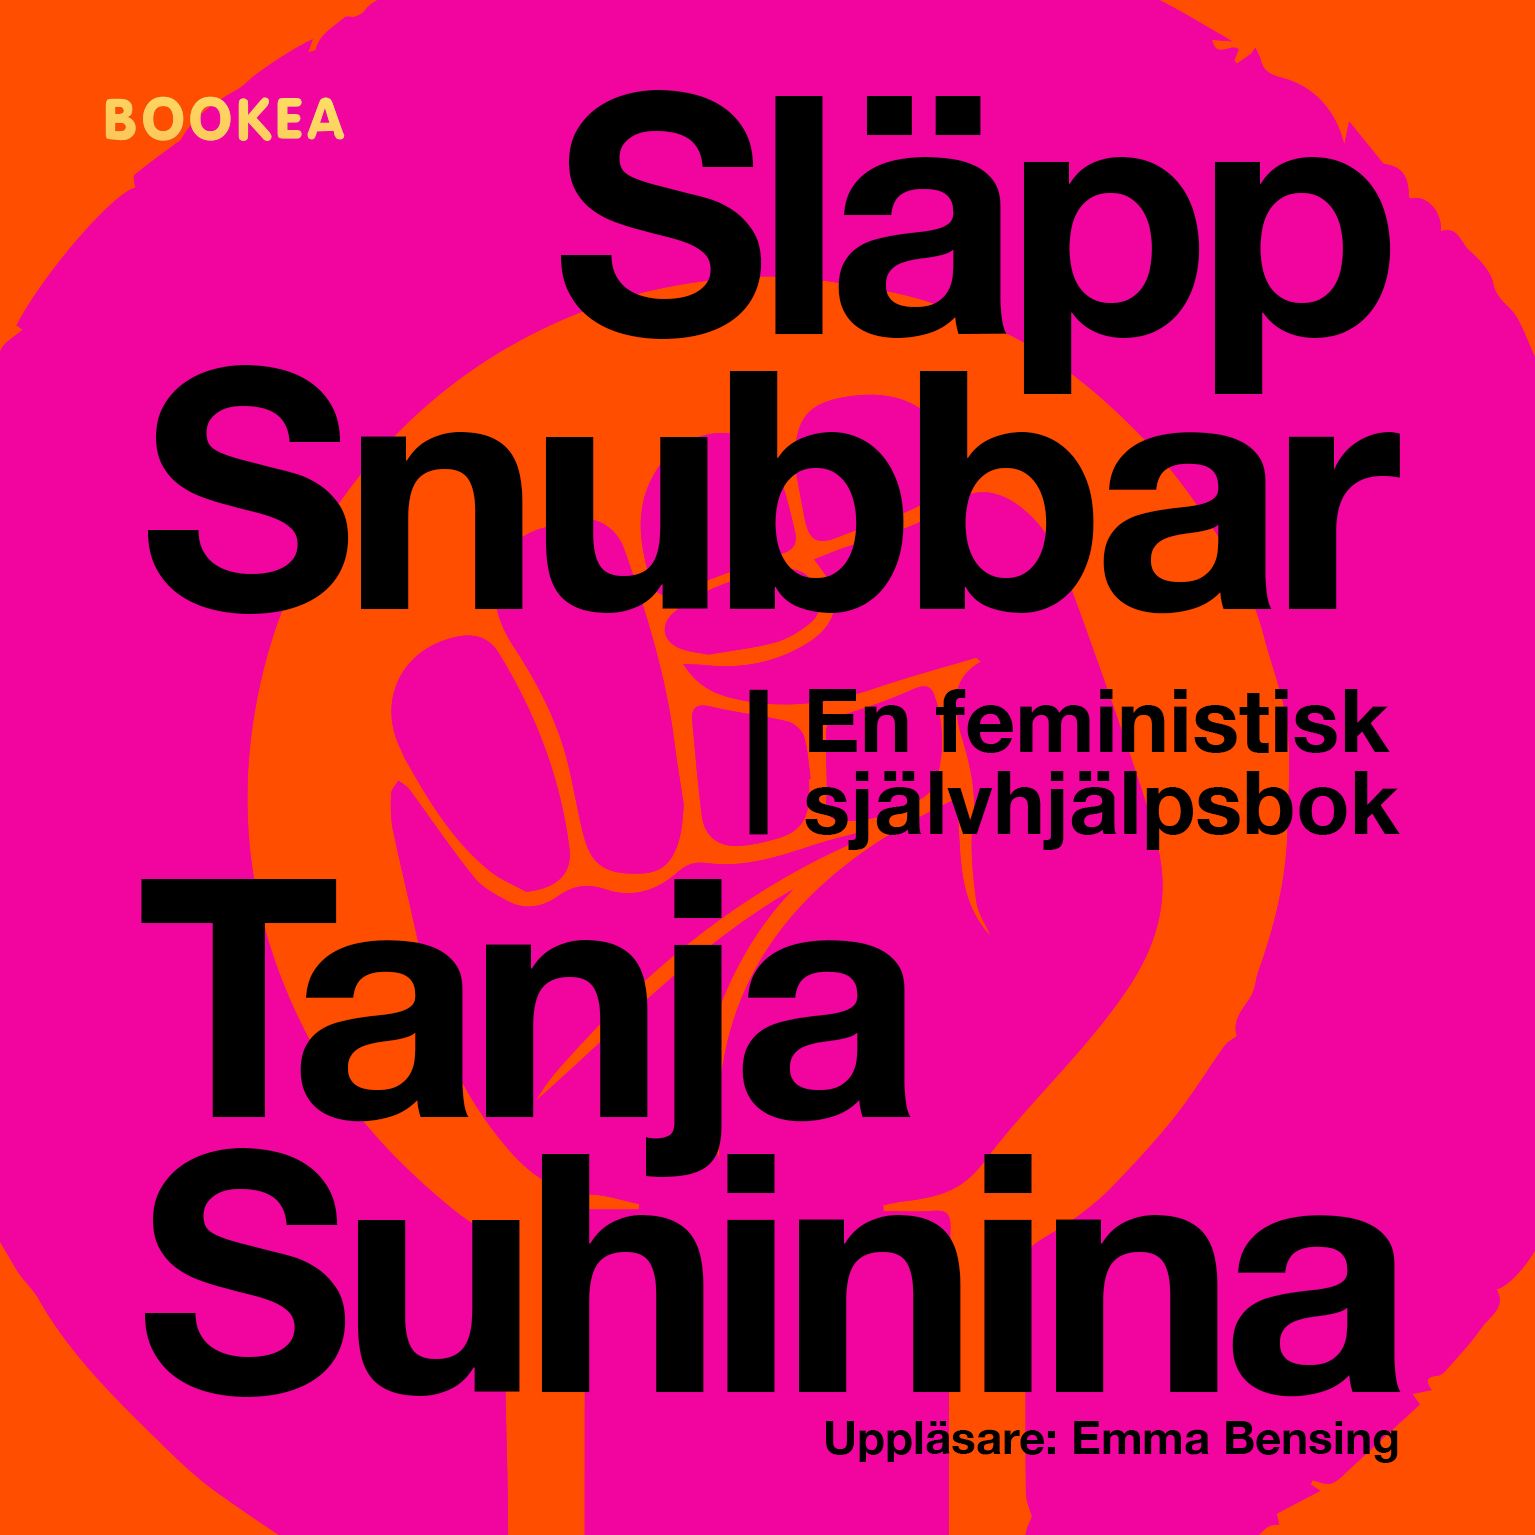 Släpp snubbar - en feministisk självhjälpsbok, audiobook by Tanja Suhinina